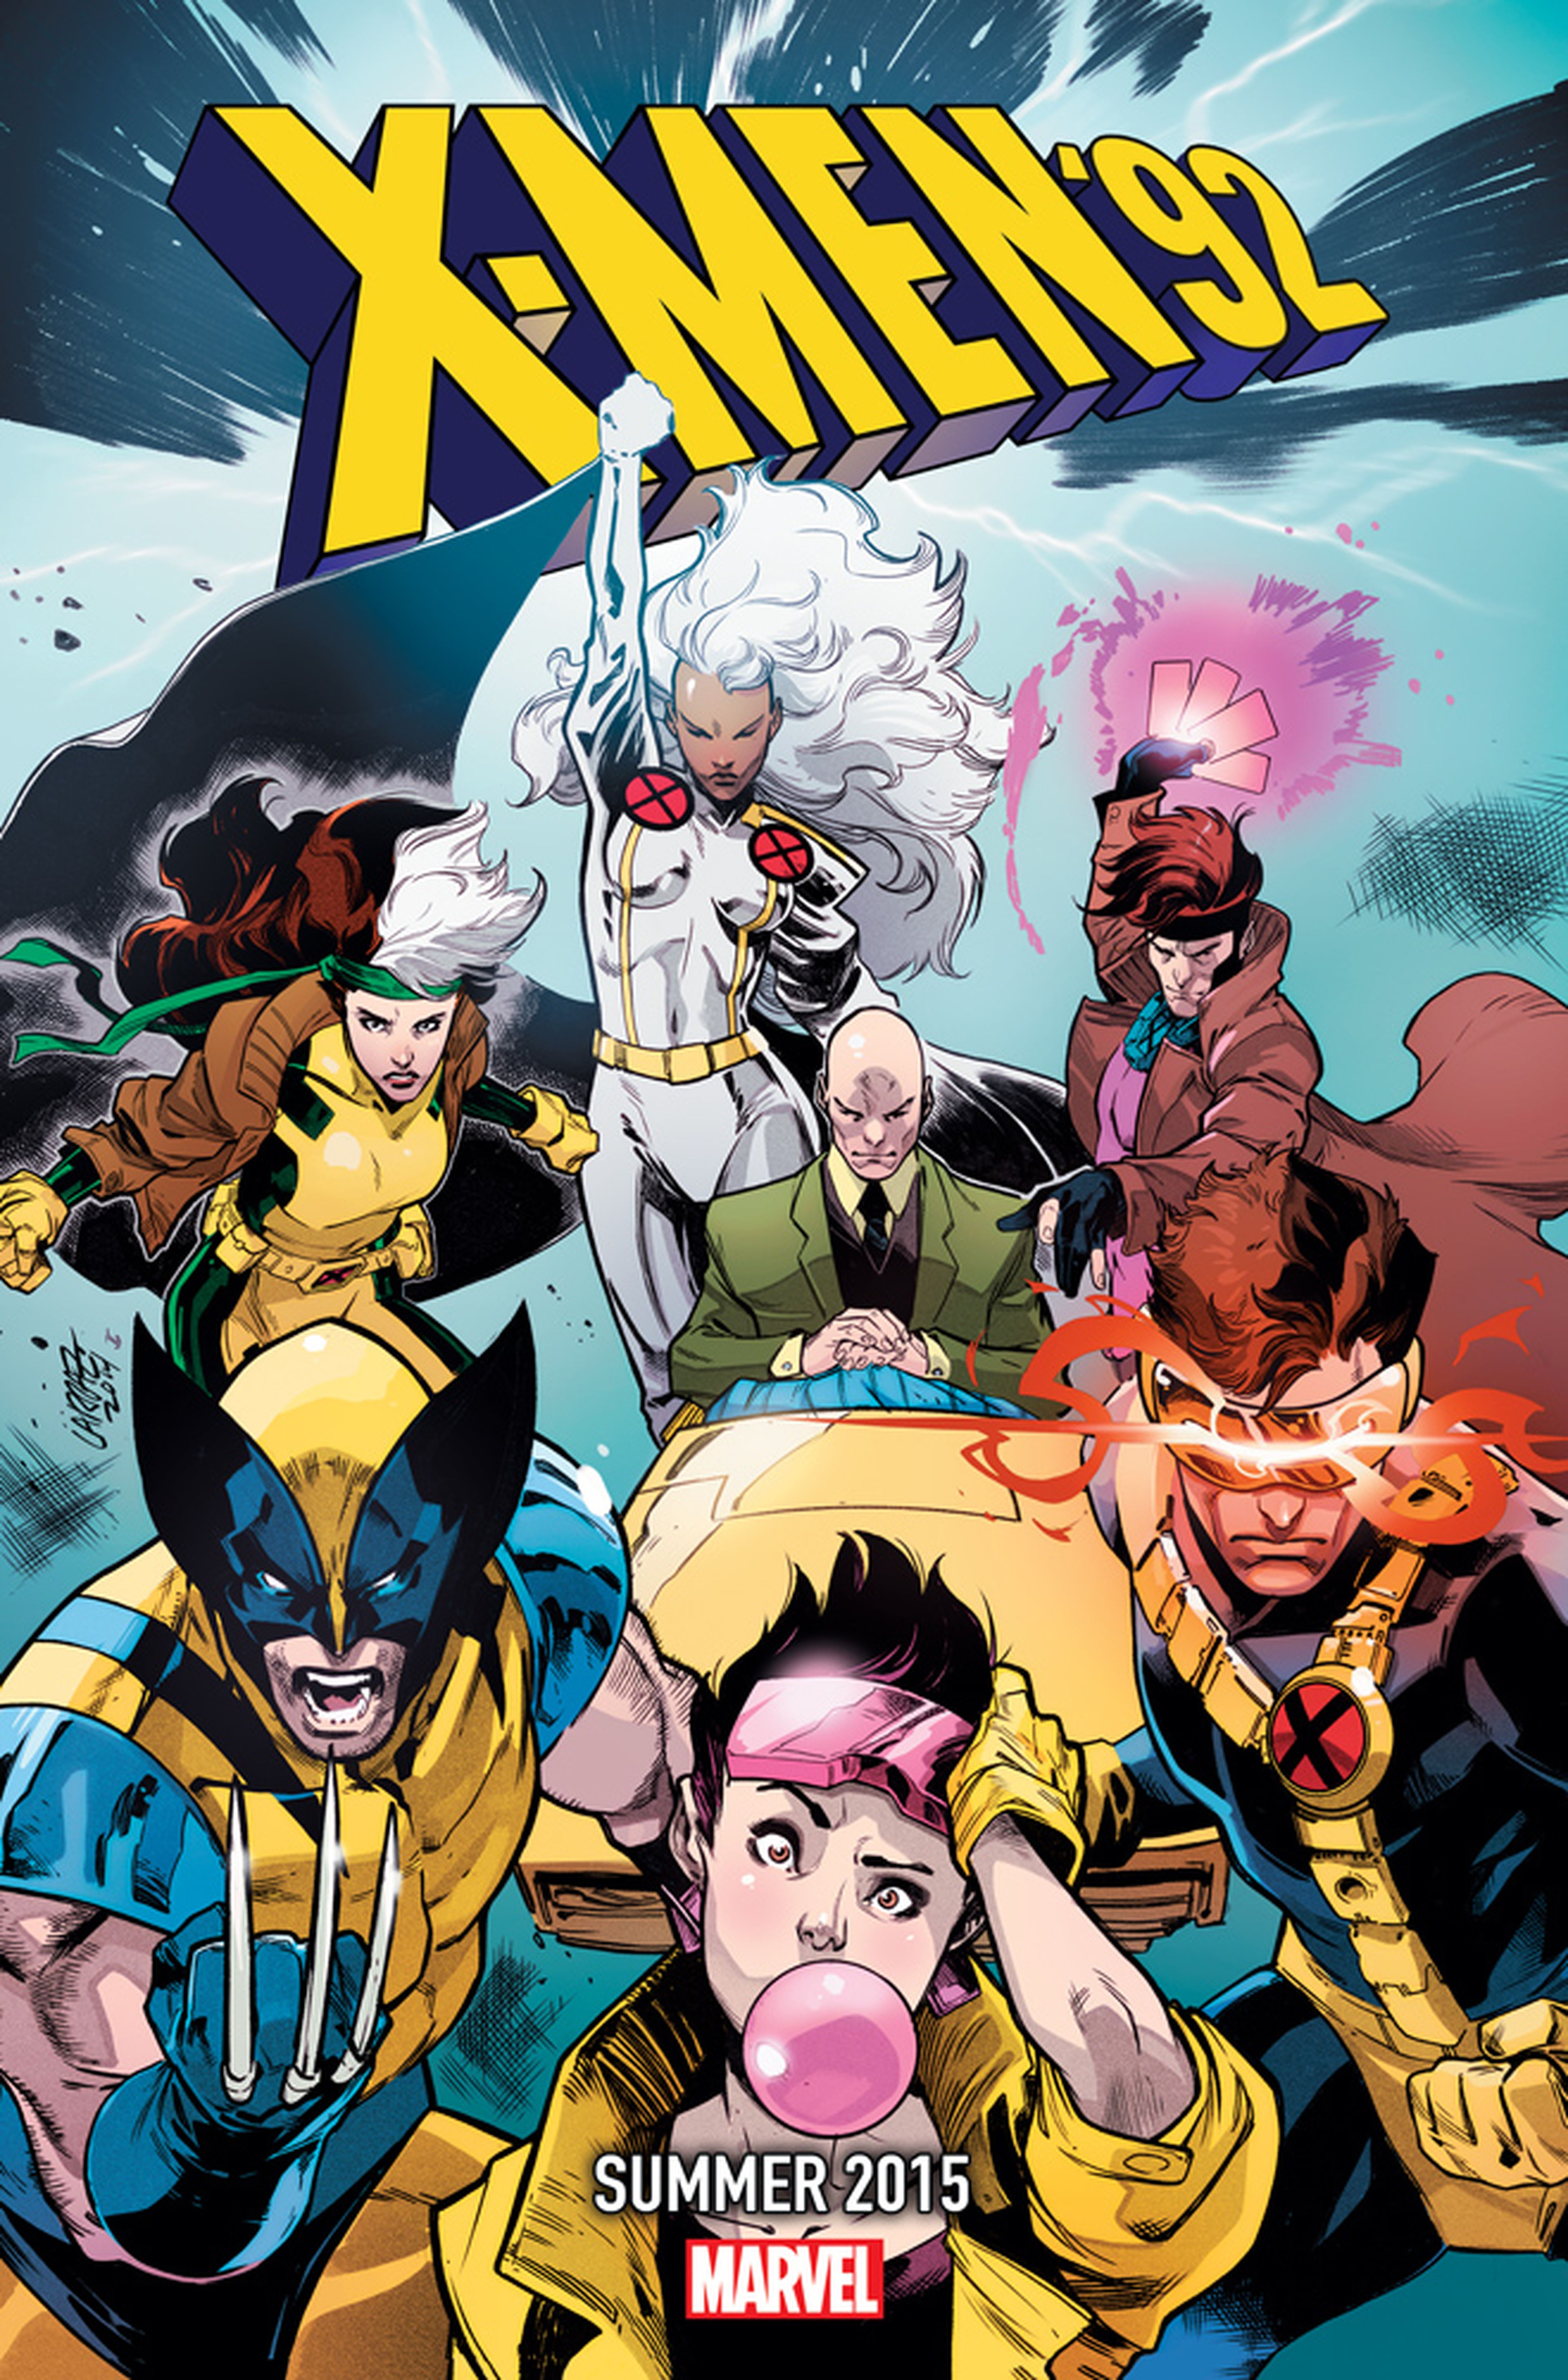 La serie animada de X-men "volverá" a Marvel en 2015